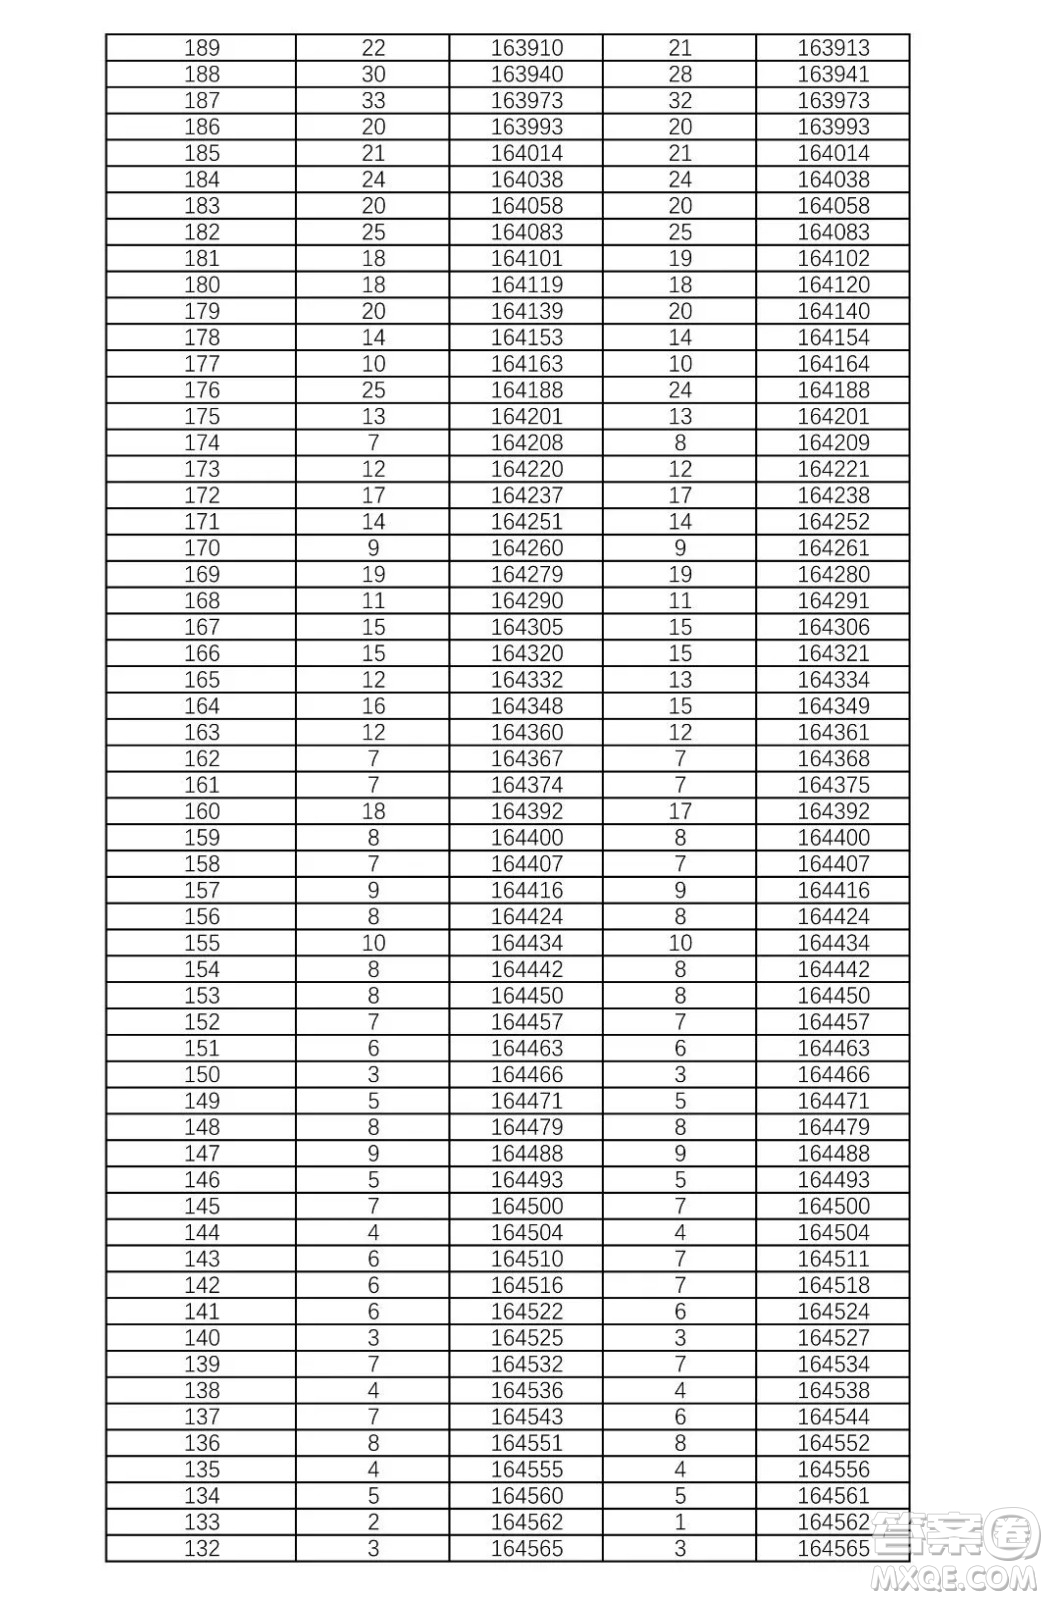 2021湖南高考一分一段表 2021湖南高考成绩一分一段表最新